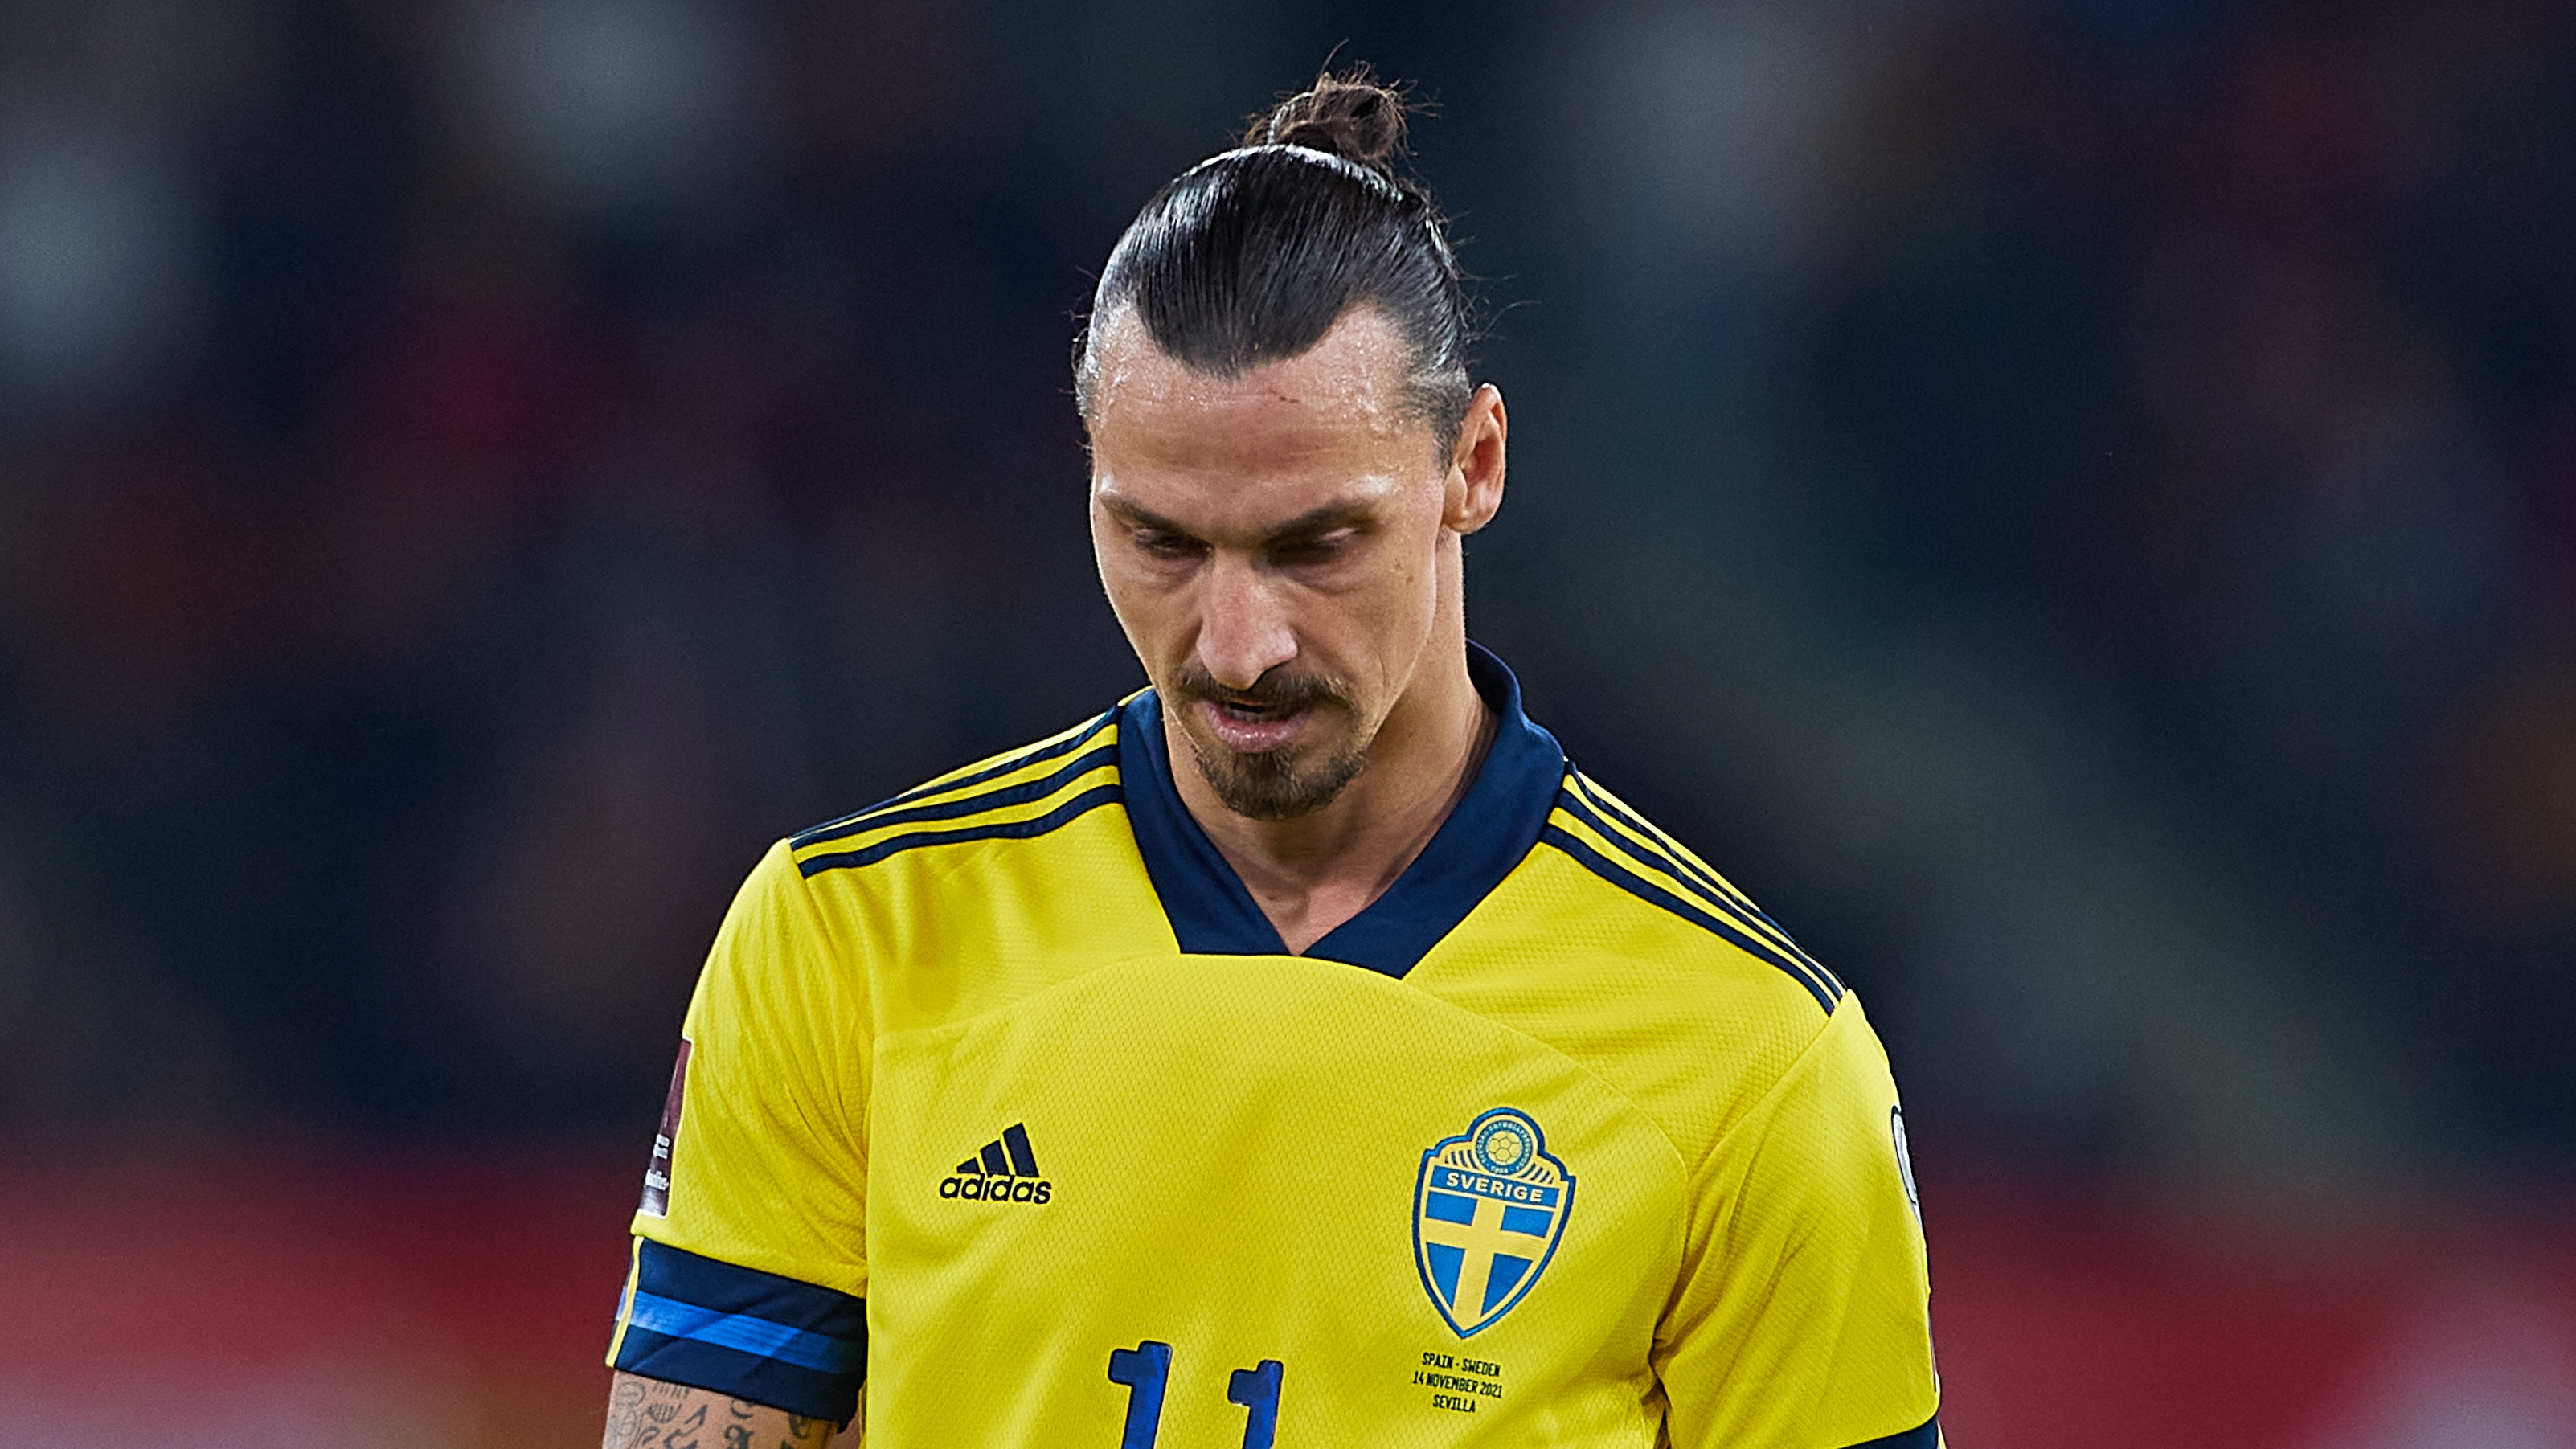 Ibrahimovic sorprendió tras hablar de la brutal agresión a un rival en España-Suecia: “Lo hice a propósito”